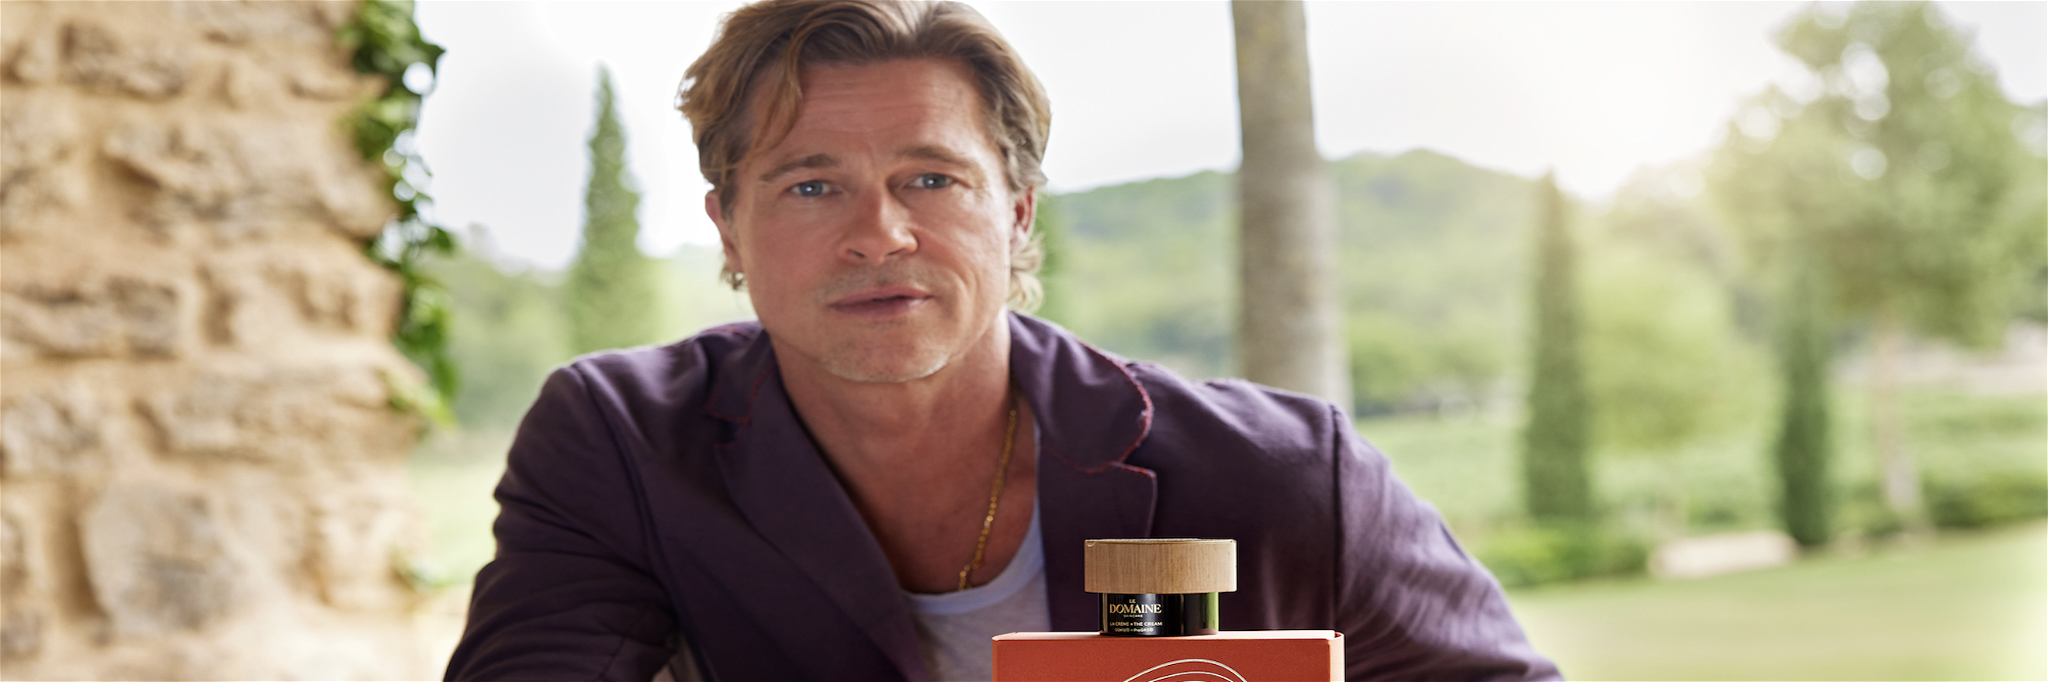 Brad Pitt and his new skincare range.